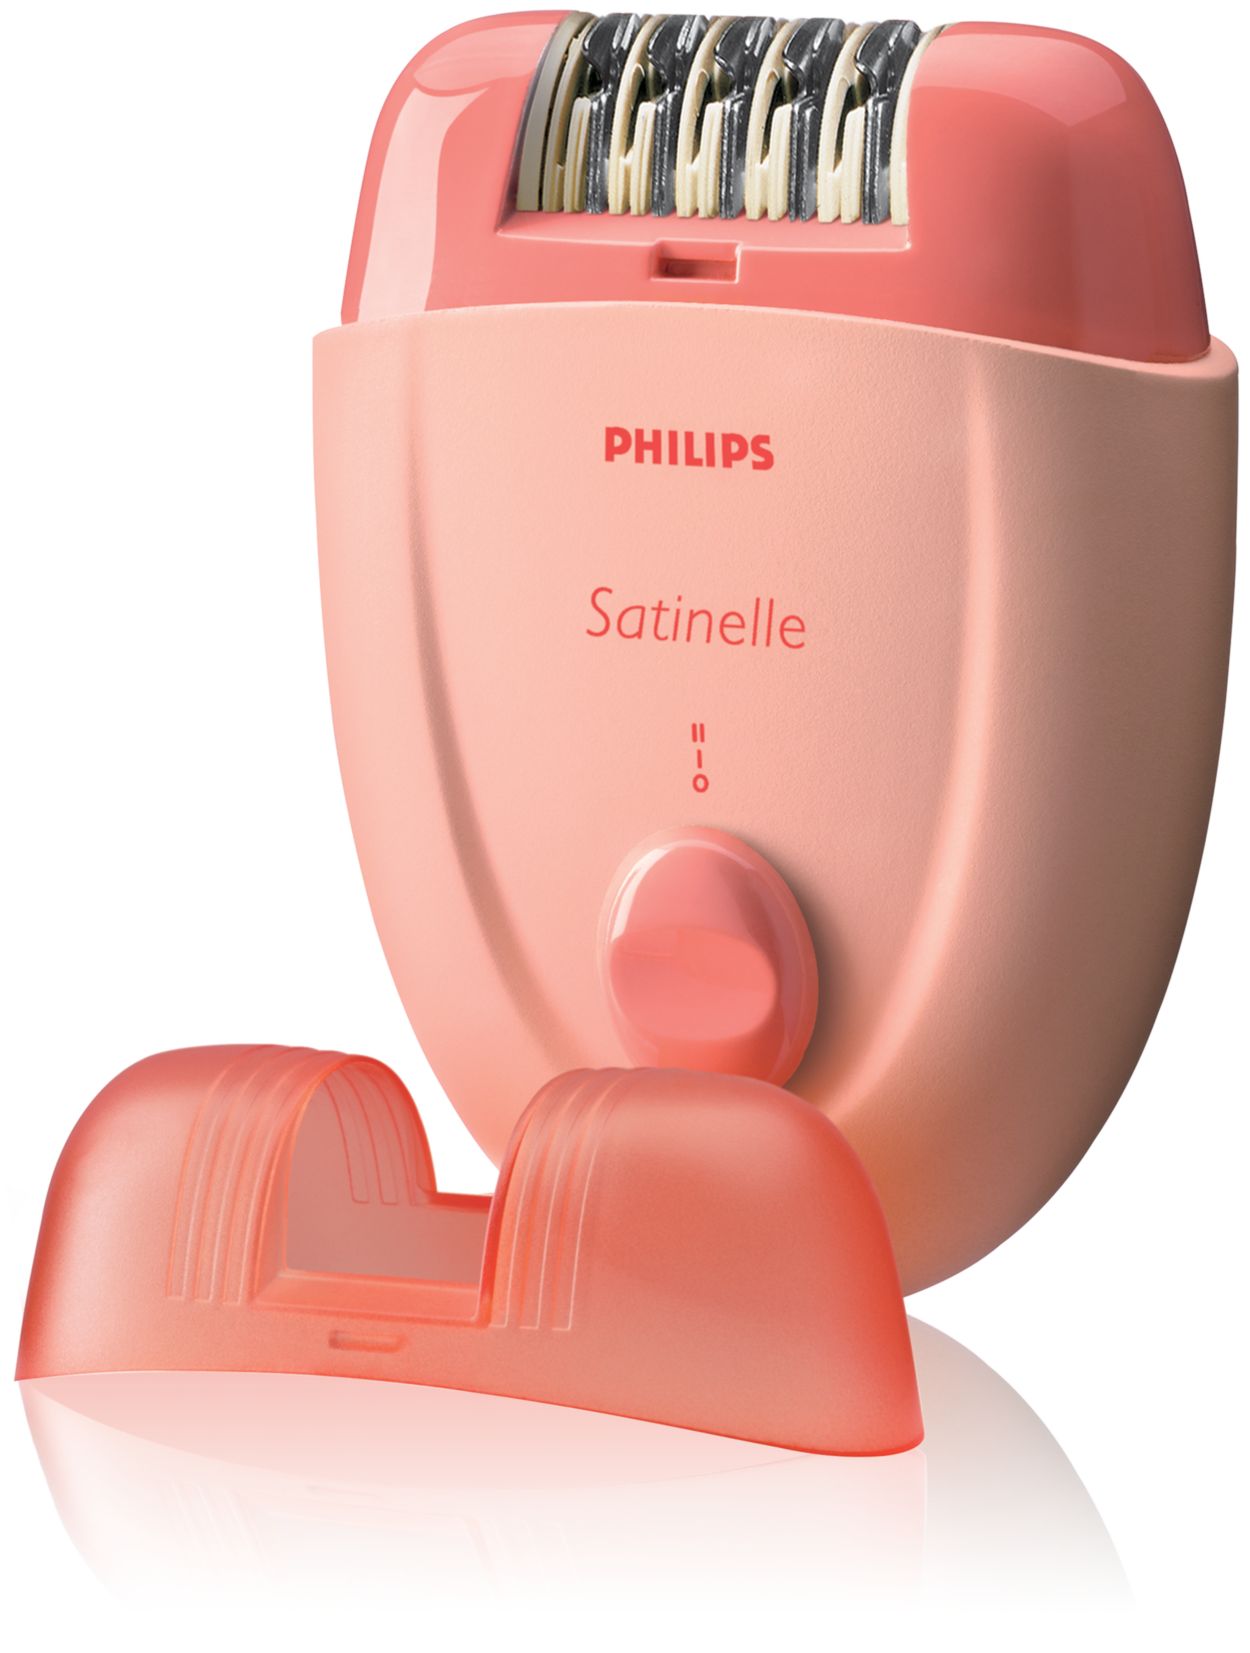 Купить эпилятор philips. Эпилятор Philips Satinelle. Эпилятор Филипс Satinelle 2844. Philips эпилятор 4000.